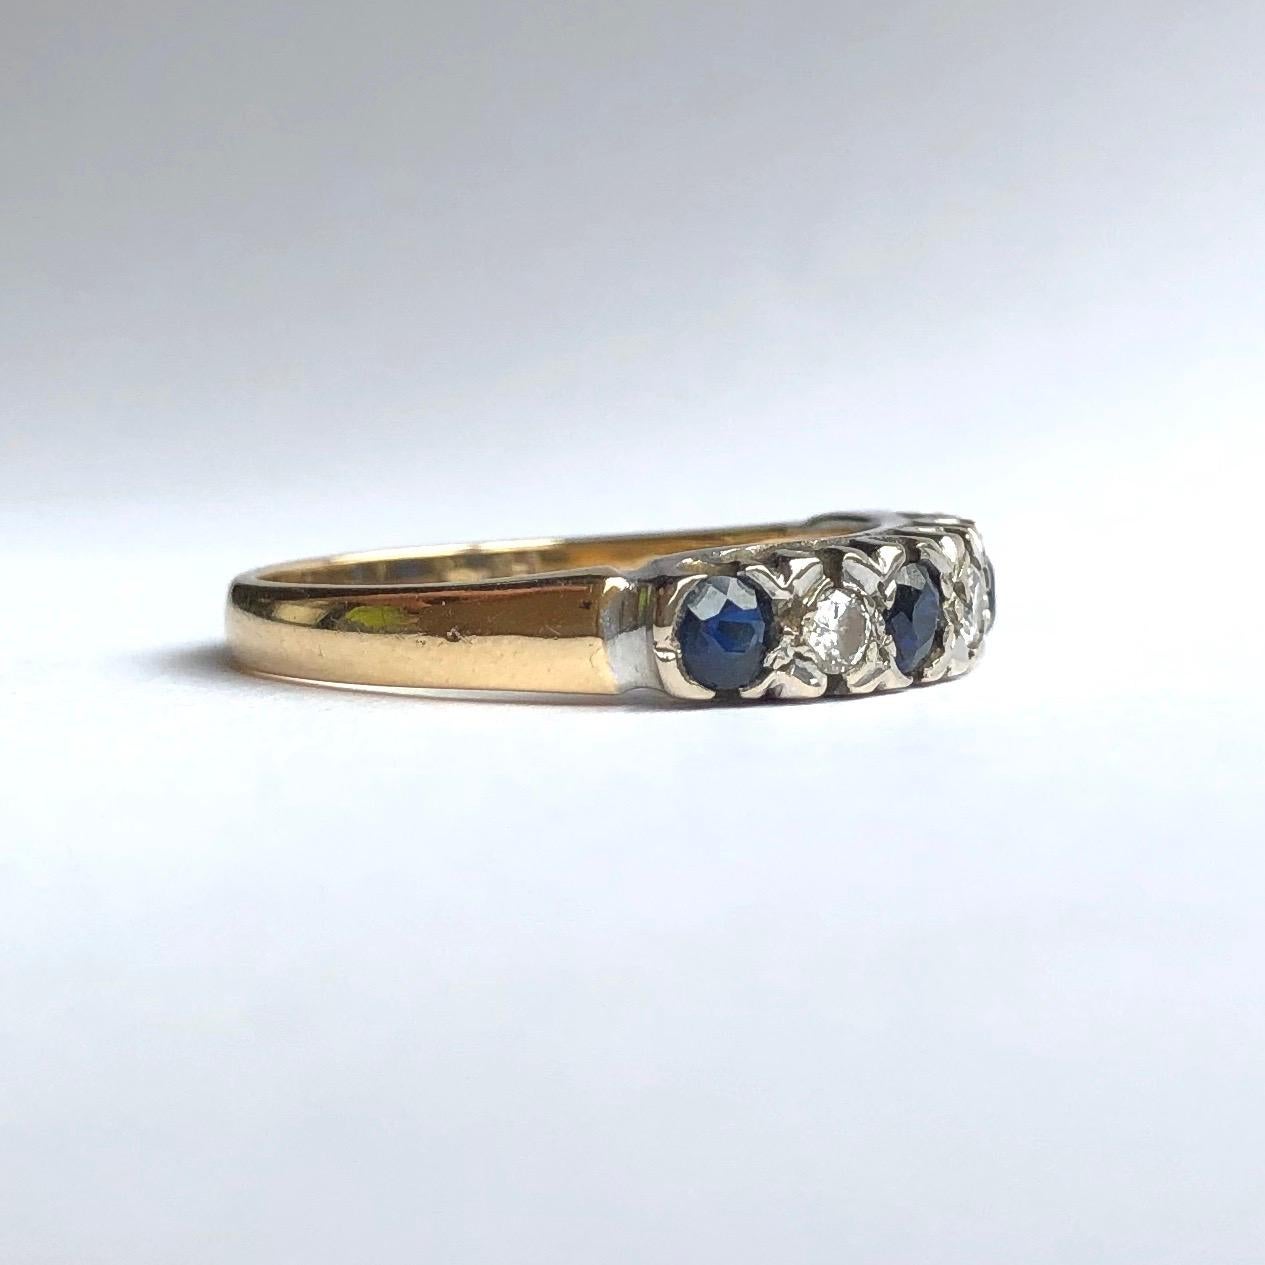 In Platin gefasst sind vier leuchtend blaue und wunderschöne Saphire von insgesamt ca. 60 pts. Neben den Saphiren befinden sich auch drei helle Diamanten. Diese summieren sich auf etwa 30 Punkte. Der Rest des Rings ist aus 18 Karat Gold modelliert